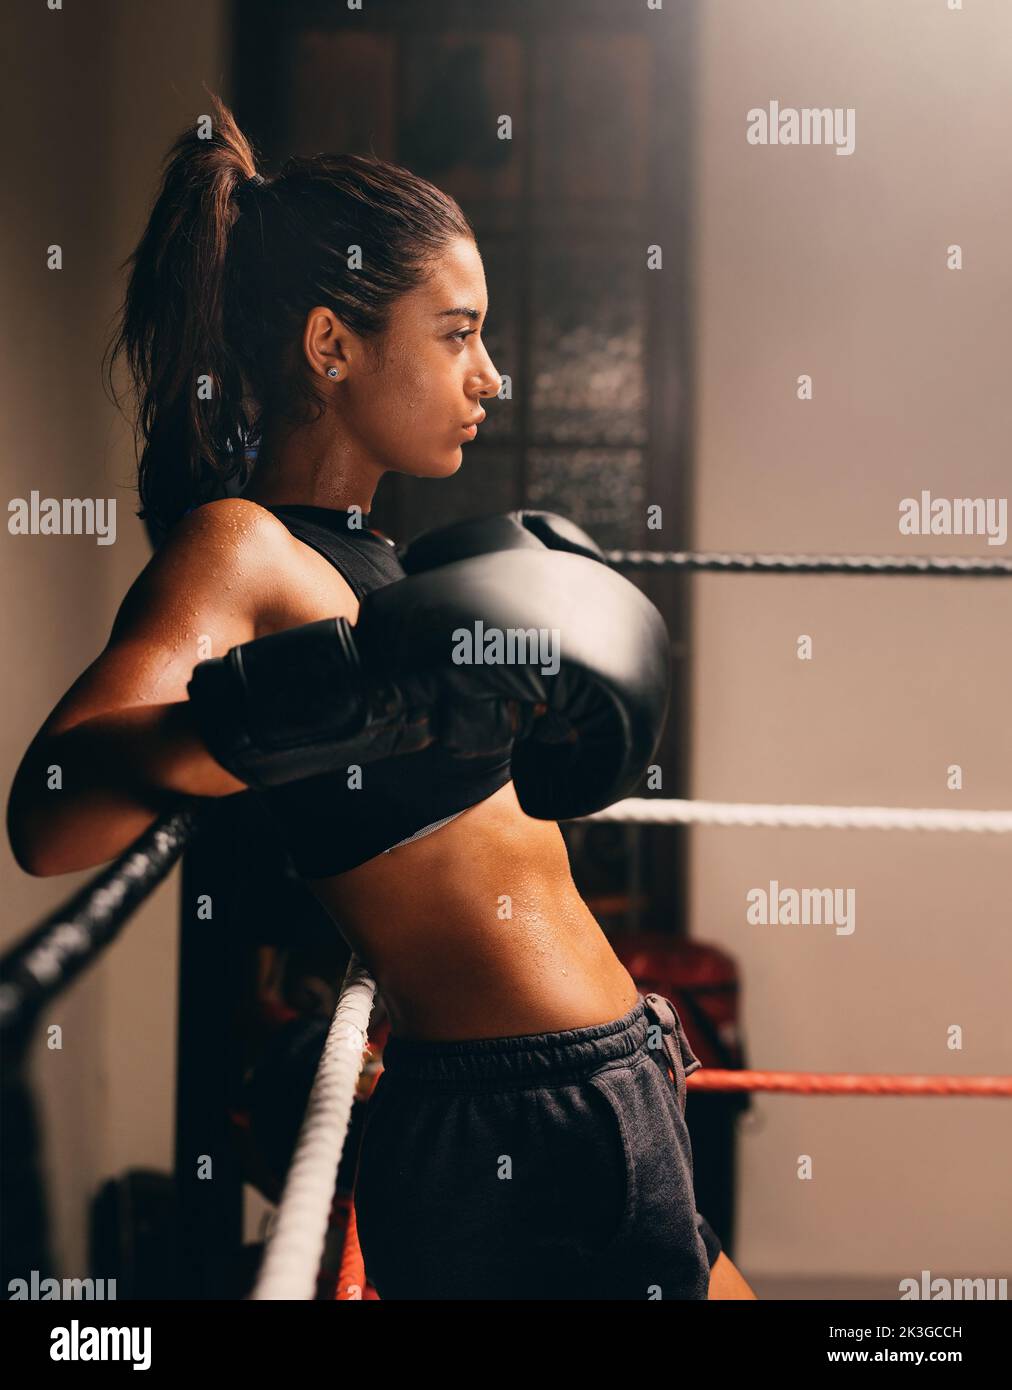 Muskulöse Boxerin, die sich in einem Boxring an den Seilen lehnt. Selbstbewusste weibliche Athletin, die sich auf einen Boxkampf vorbereitet. Stockfoto